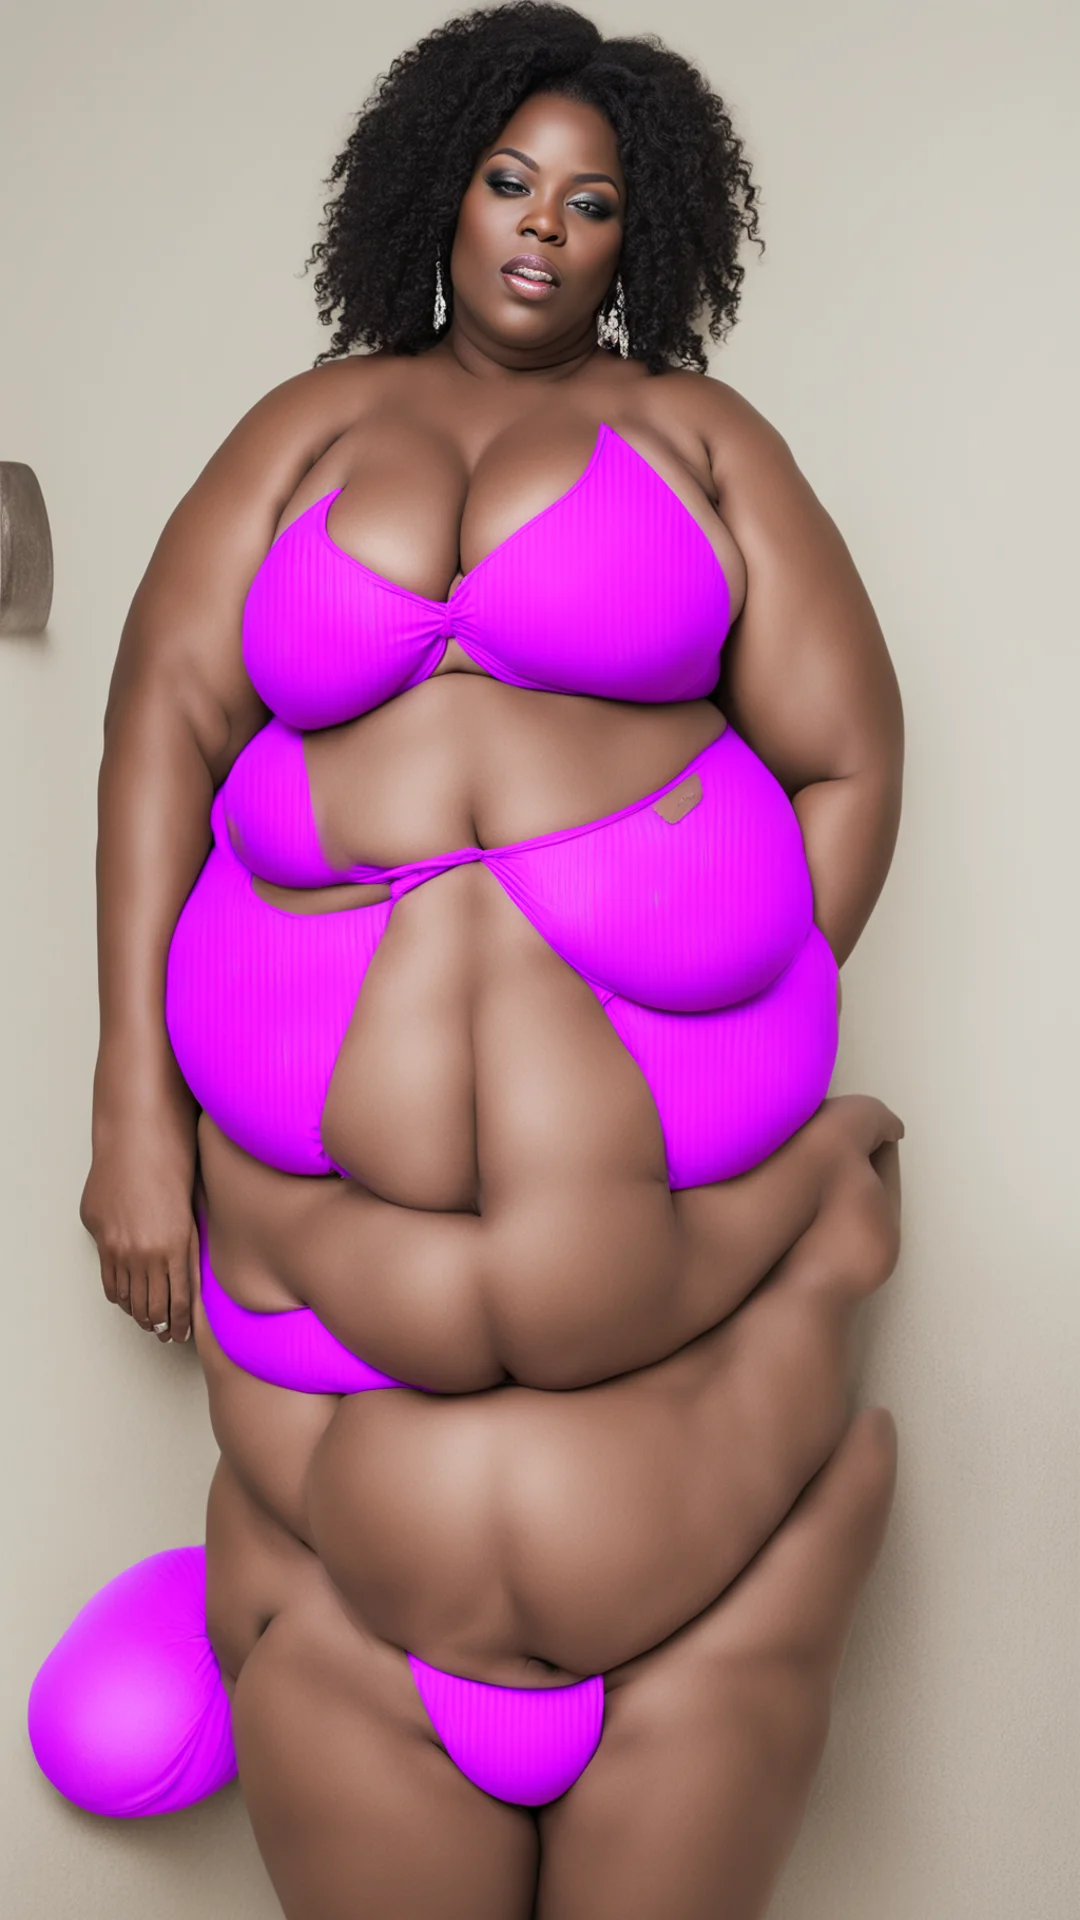 very fat ebony shemale wearing a purple bikini amazing awesome portrait 2 tall